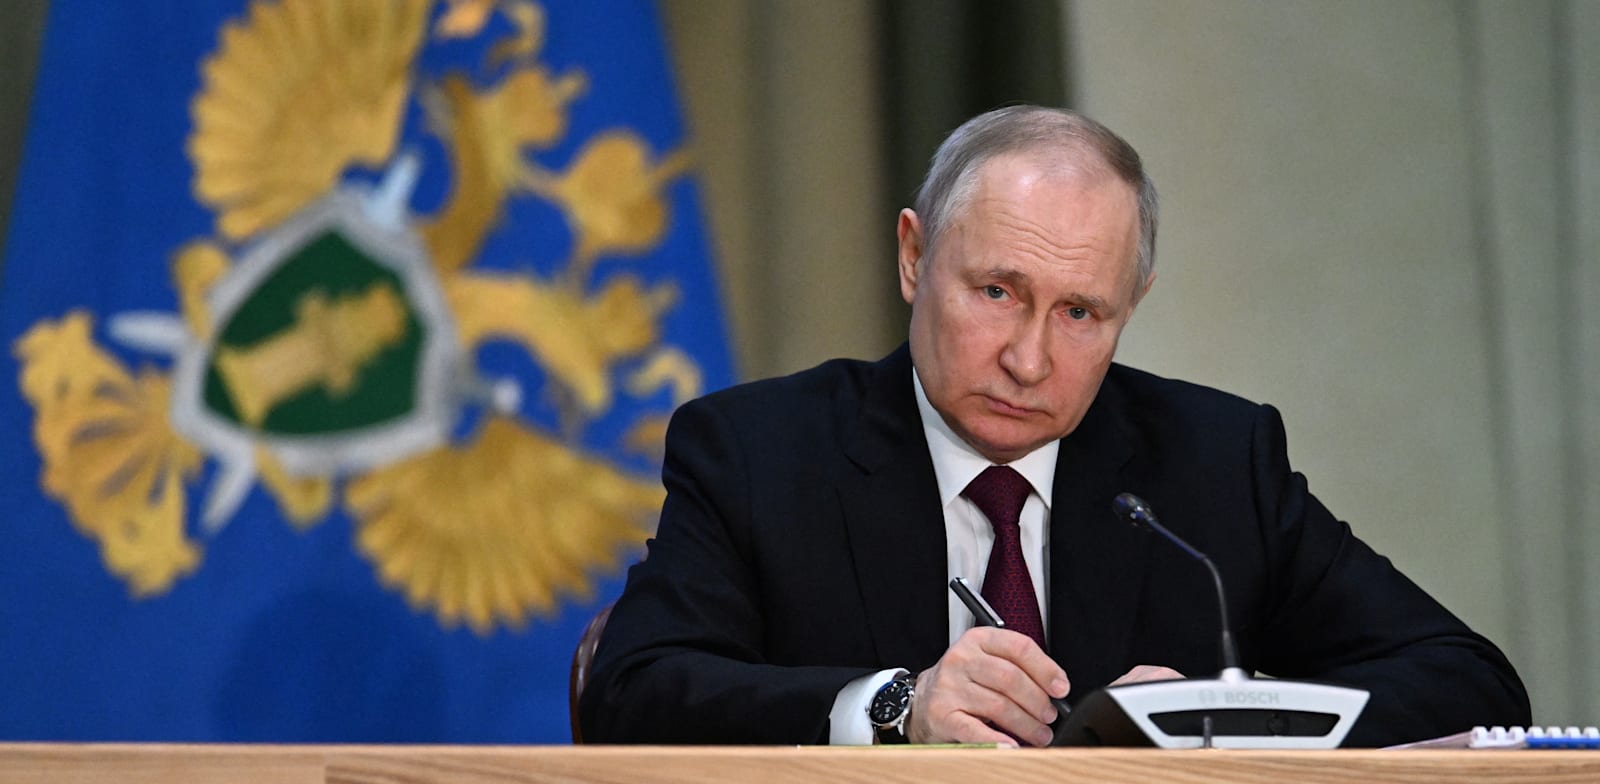 נשיא רוסיה, ולדימיר פוטין / צילום: Reuters, SPUTNIK